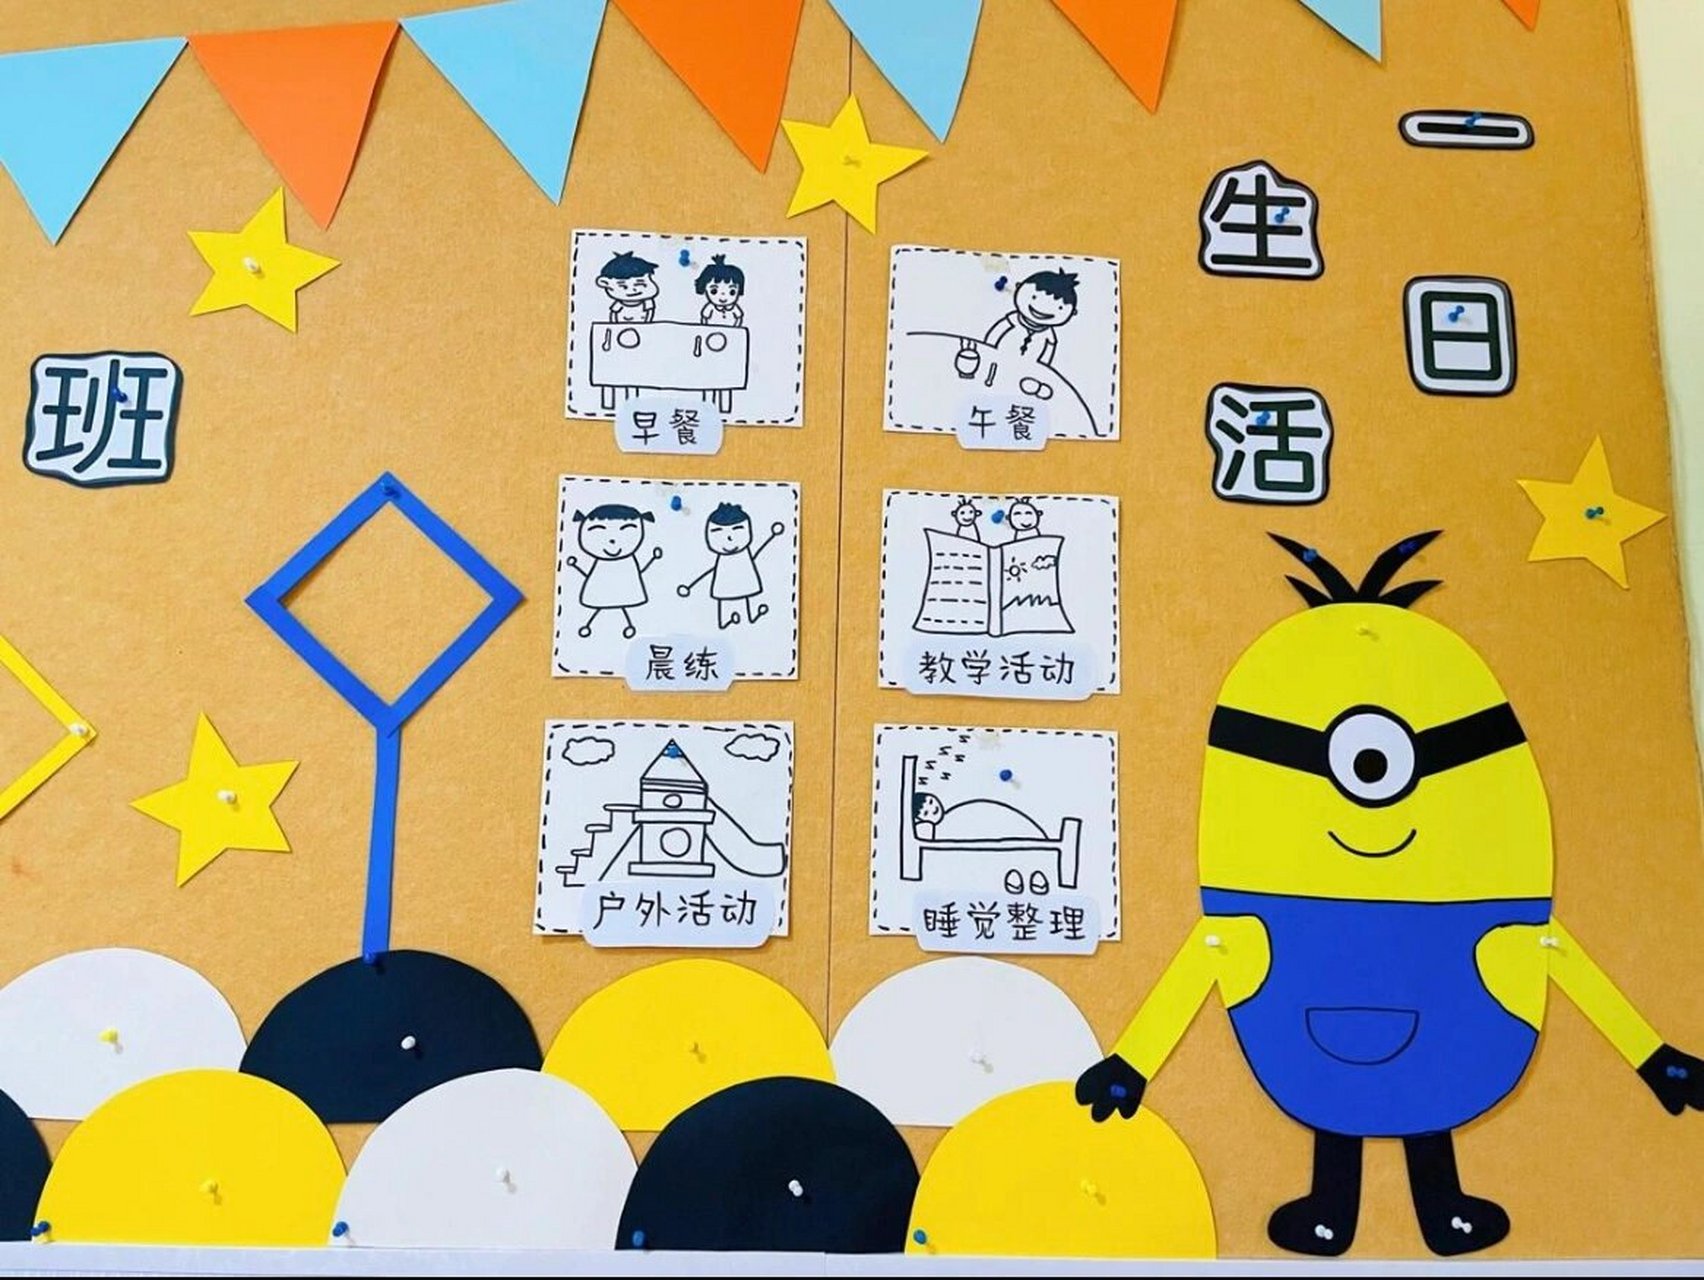 幼儿园环创主题墙图片材料 幼儿园环创小黄人主题墙